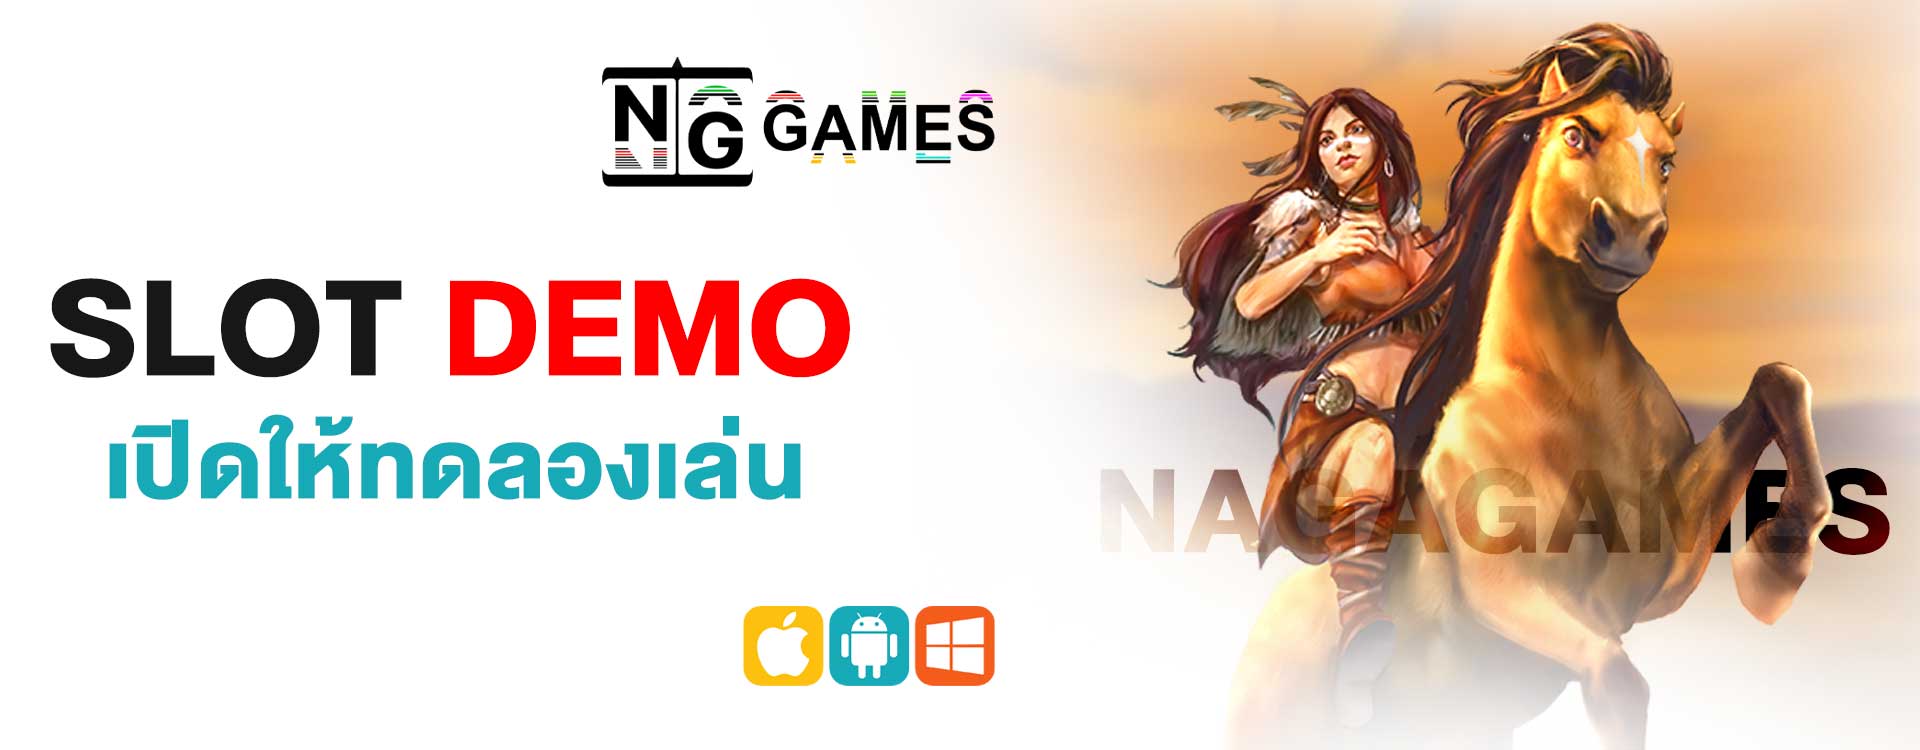 NG GAME